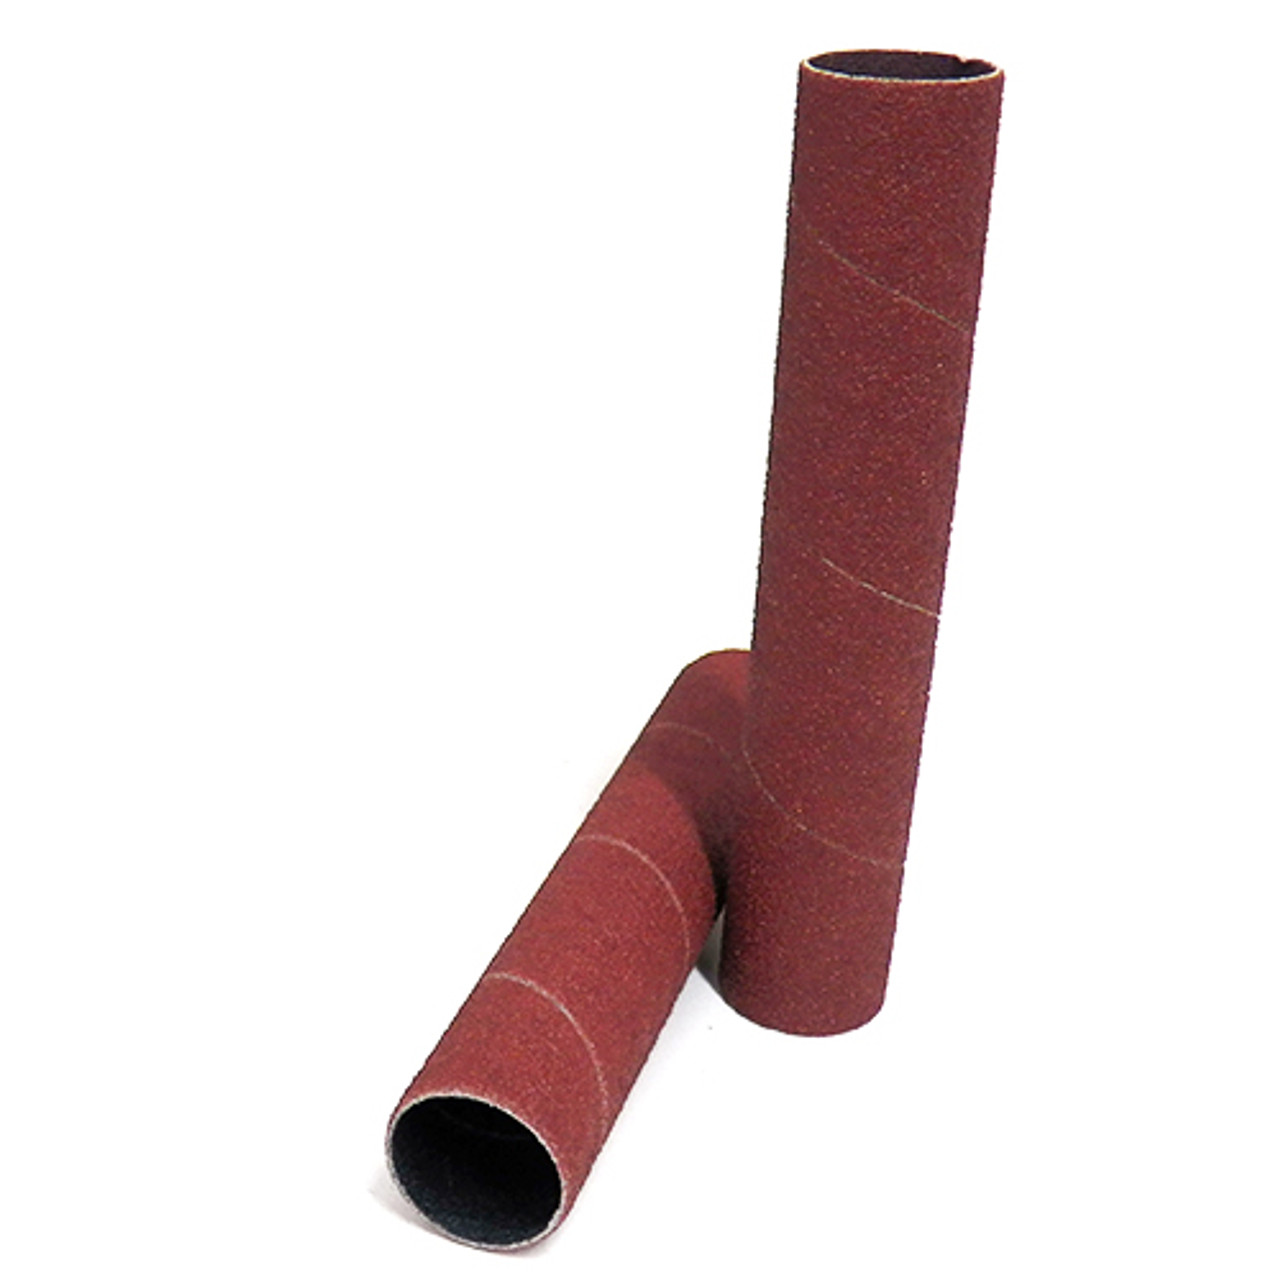 Klingspor Abrasives Aluminum Oxide Sanding Sleeves, 1"X 6" 150 Grit, 2pk